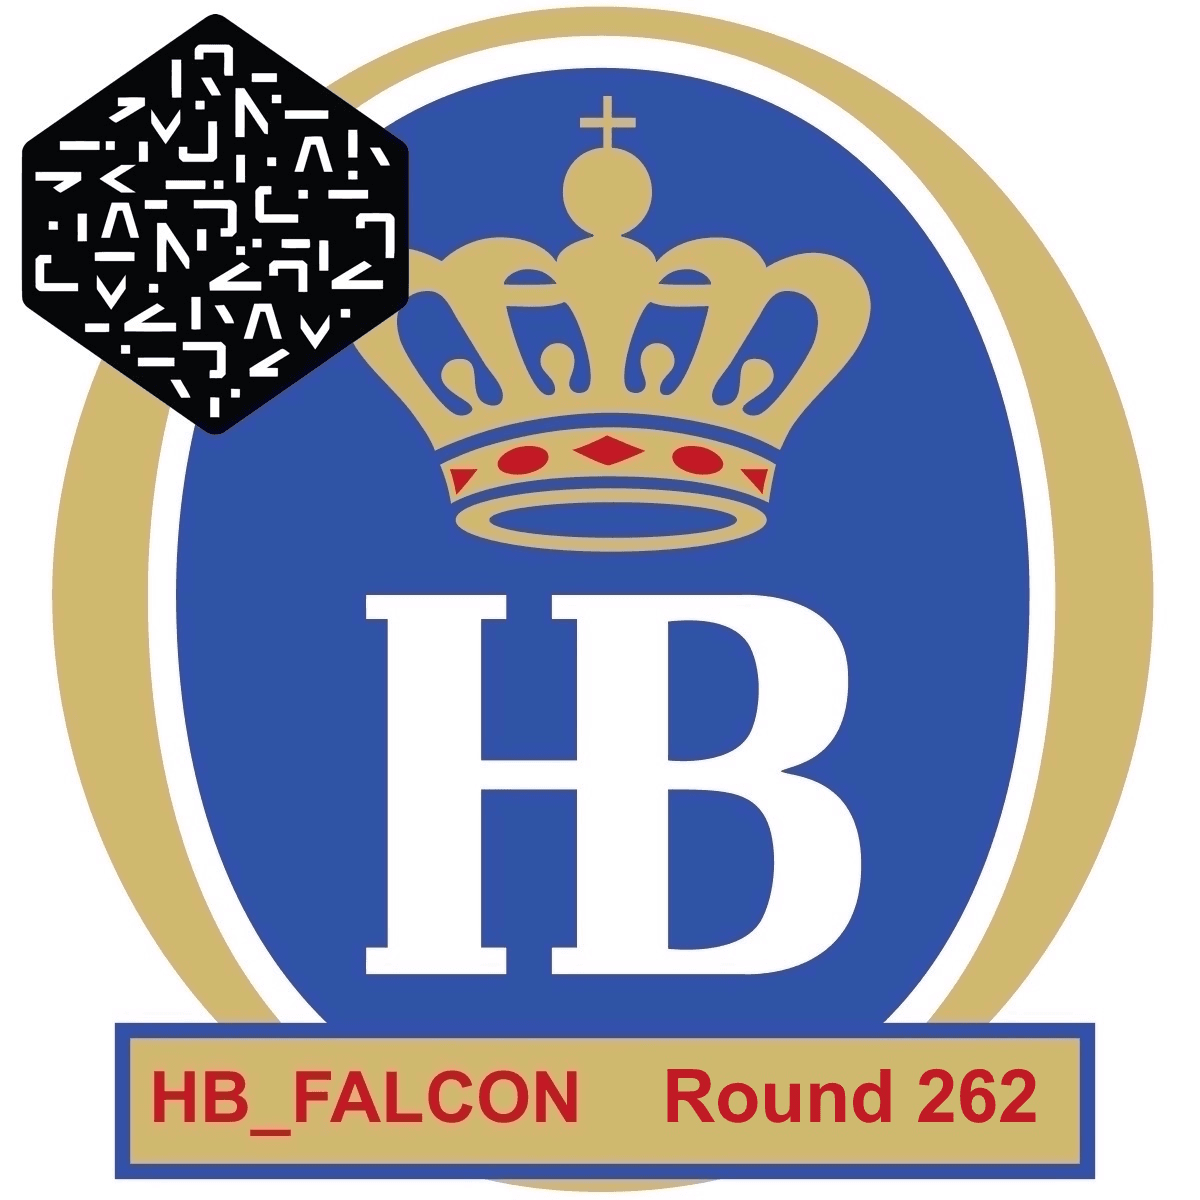 HB_FALCON Round 262 Numerai